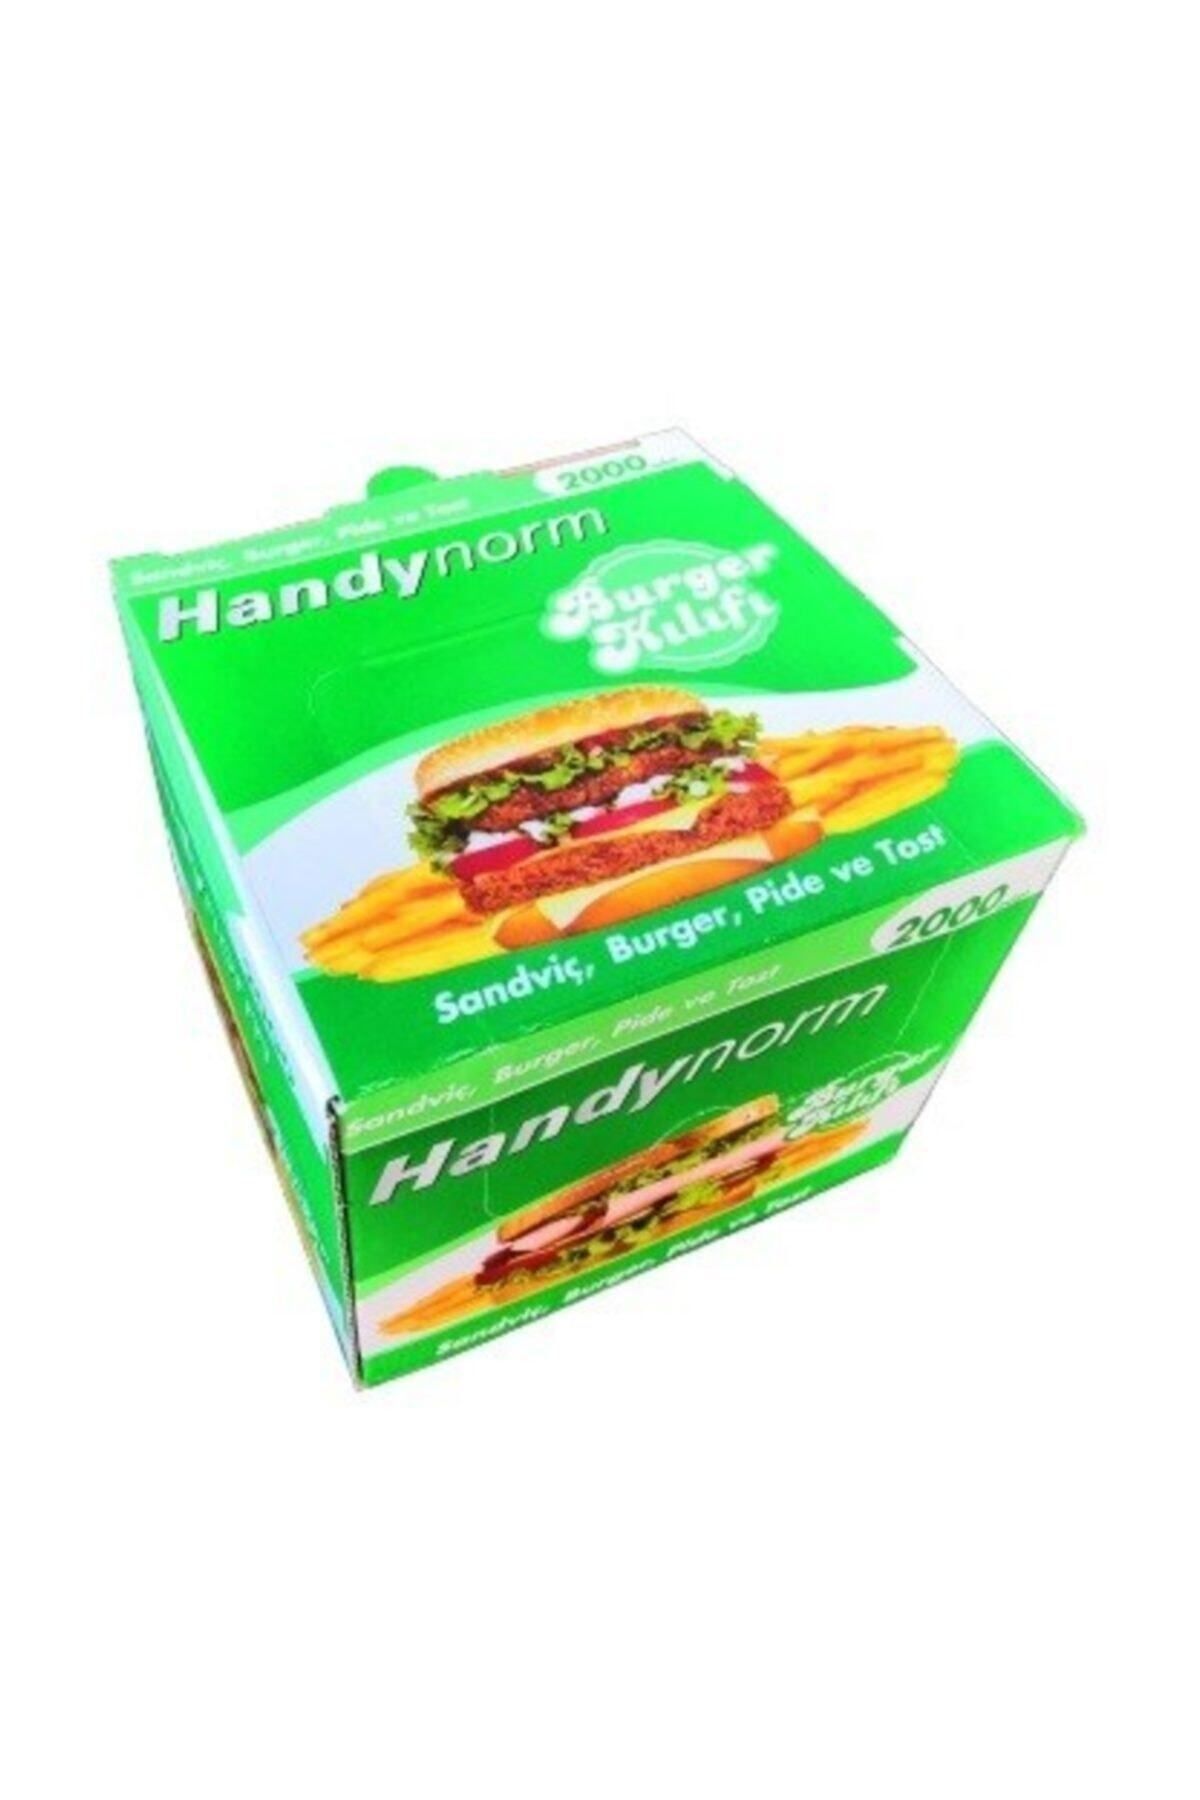 NAKSAN Handynorm Hamburger Poşeti (burger Kılıfı) 2000 Adet